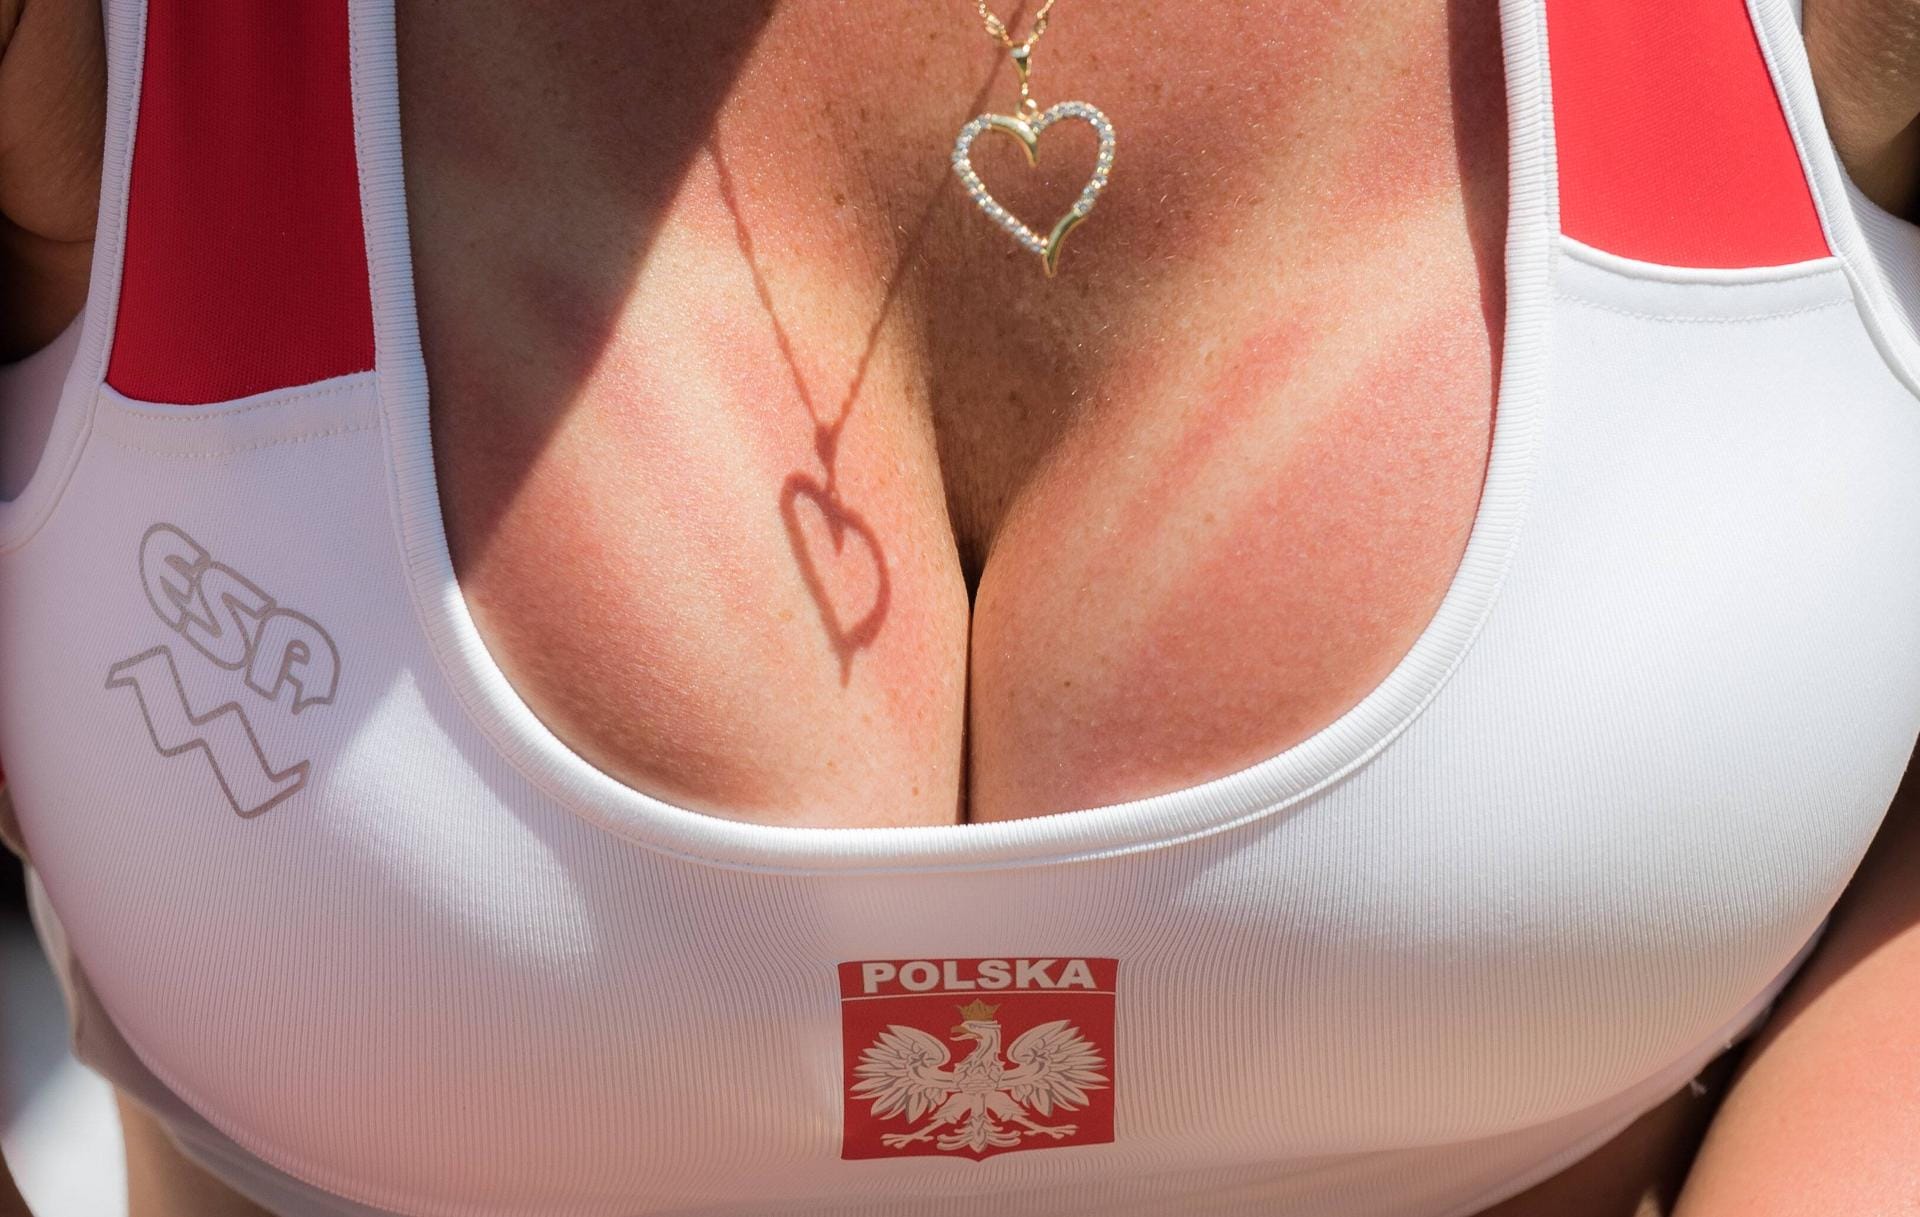 Voller Körpereinsatz! Verpackt in einem Top in Landesfarben zeigt ein polnischer Fan sein Dekolleté.